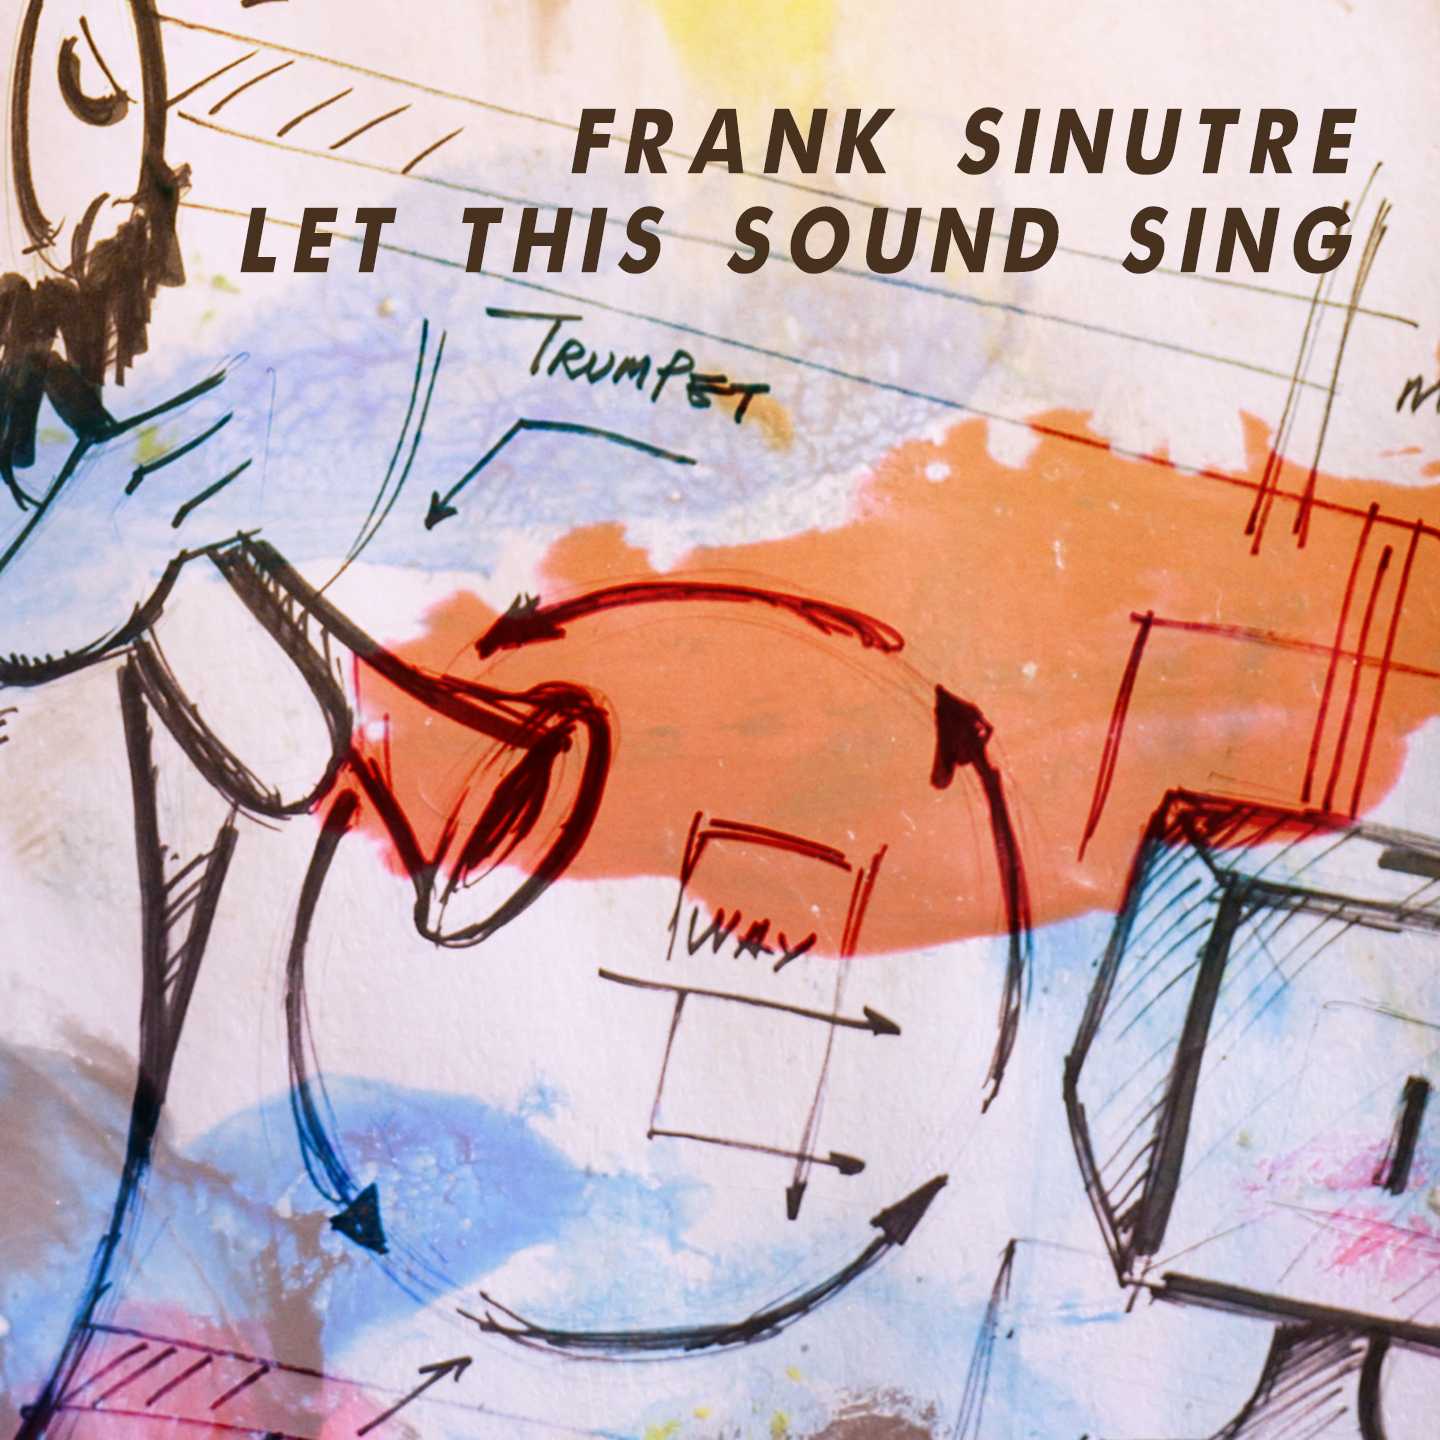 Frank Sinutre (musica elettronica con strumenti elettronici home made) in uscita con il singolo “Let This Sound Sing” estratto dal 4° album “200.000.000 Steps” 